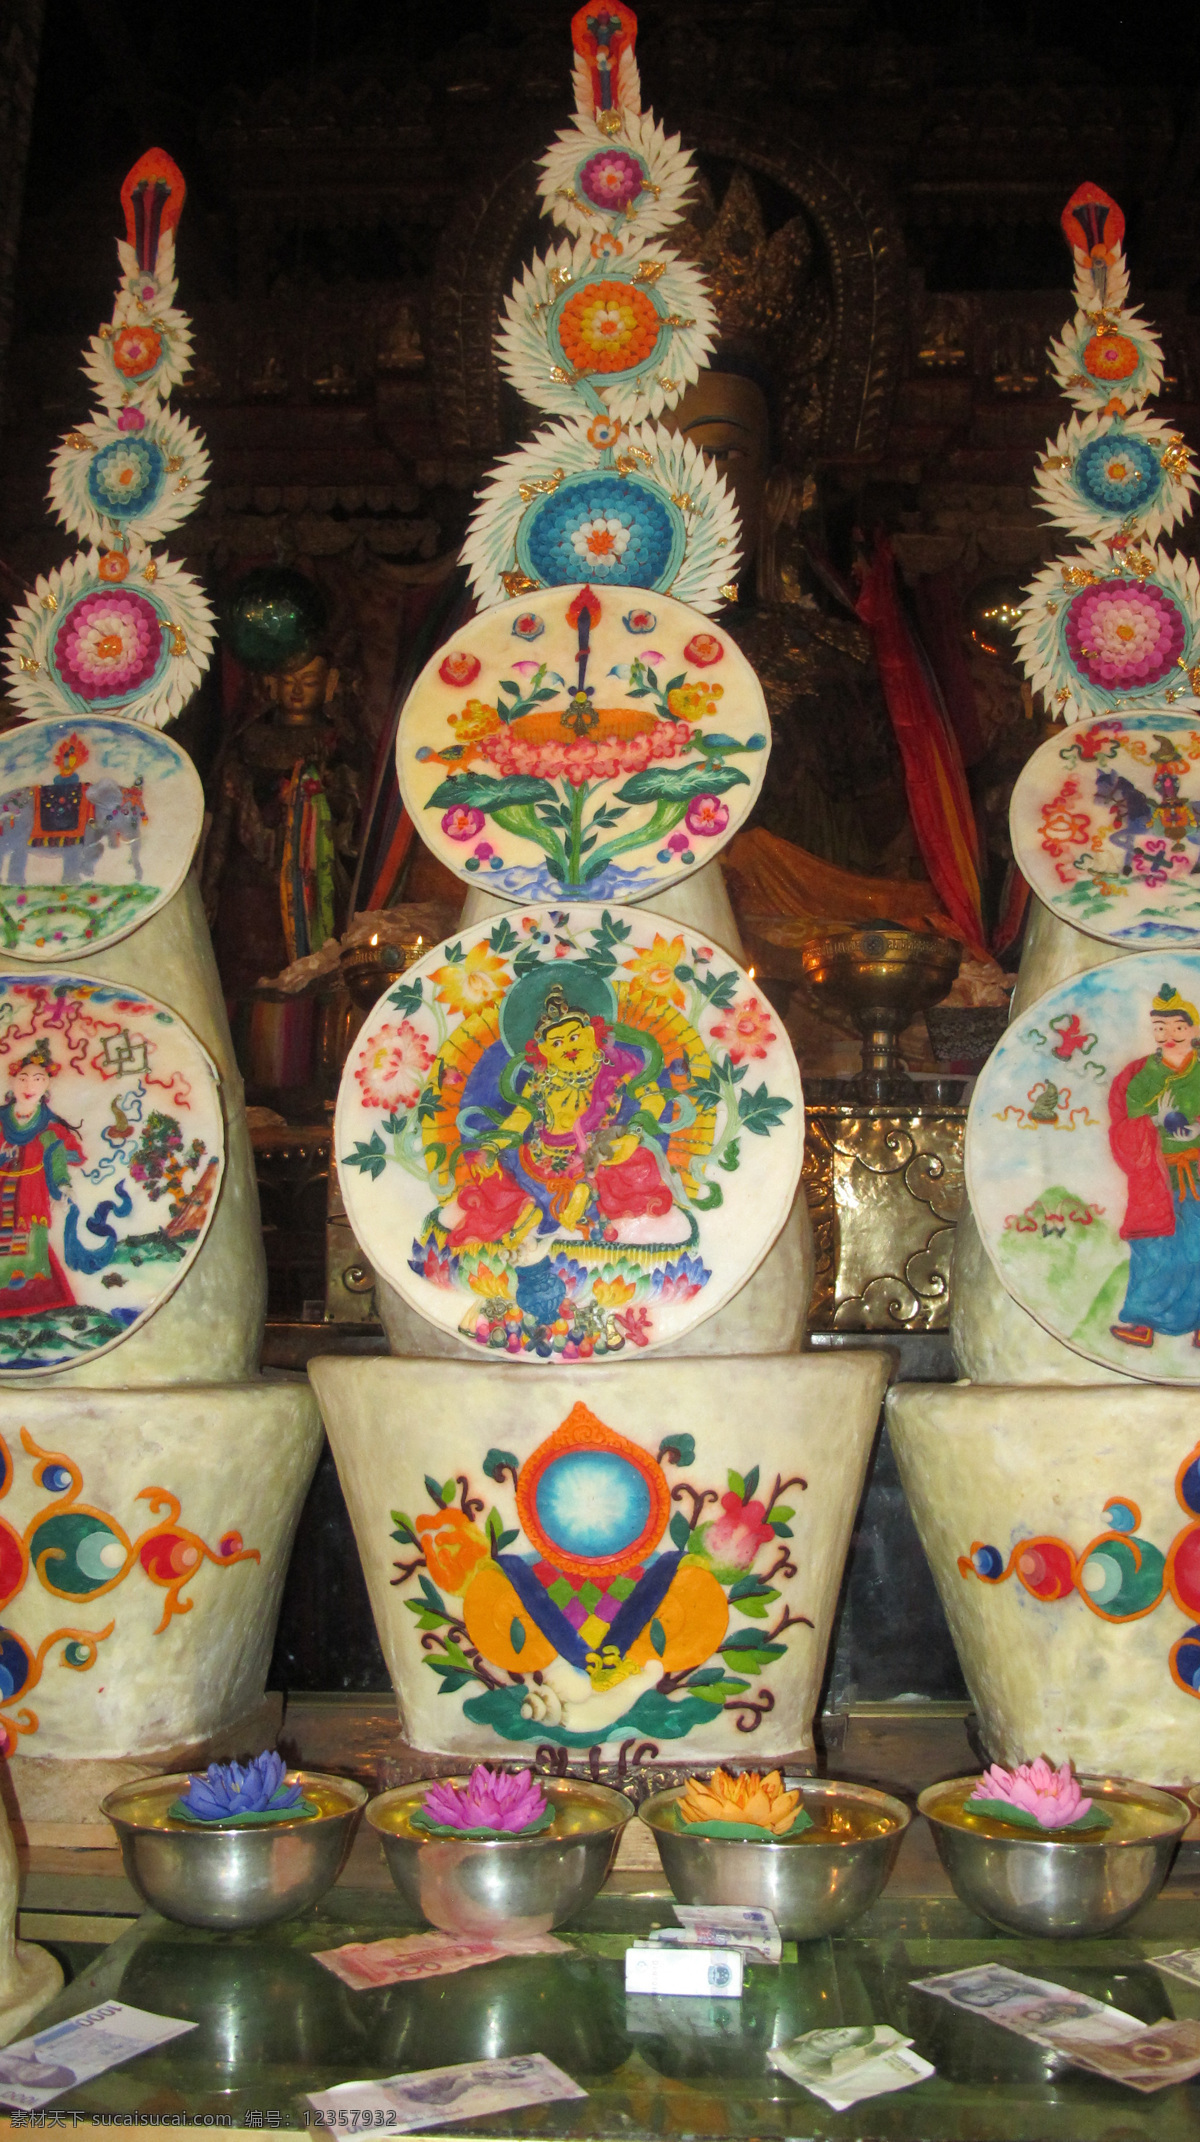 传统文化 雕塑 佛教 高原 绘画 寺院 文化 酥油花 西藏 拉萨 贡品 酥油 宗教 艺术 展览 朝拜 西藏民俗 文化艺术 装饰素材 展示设计